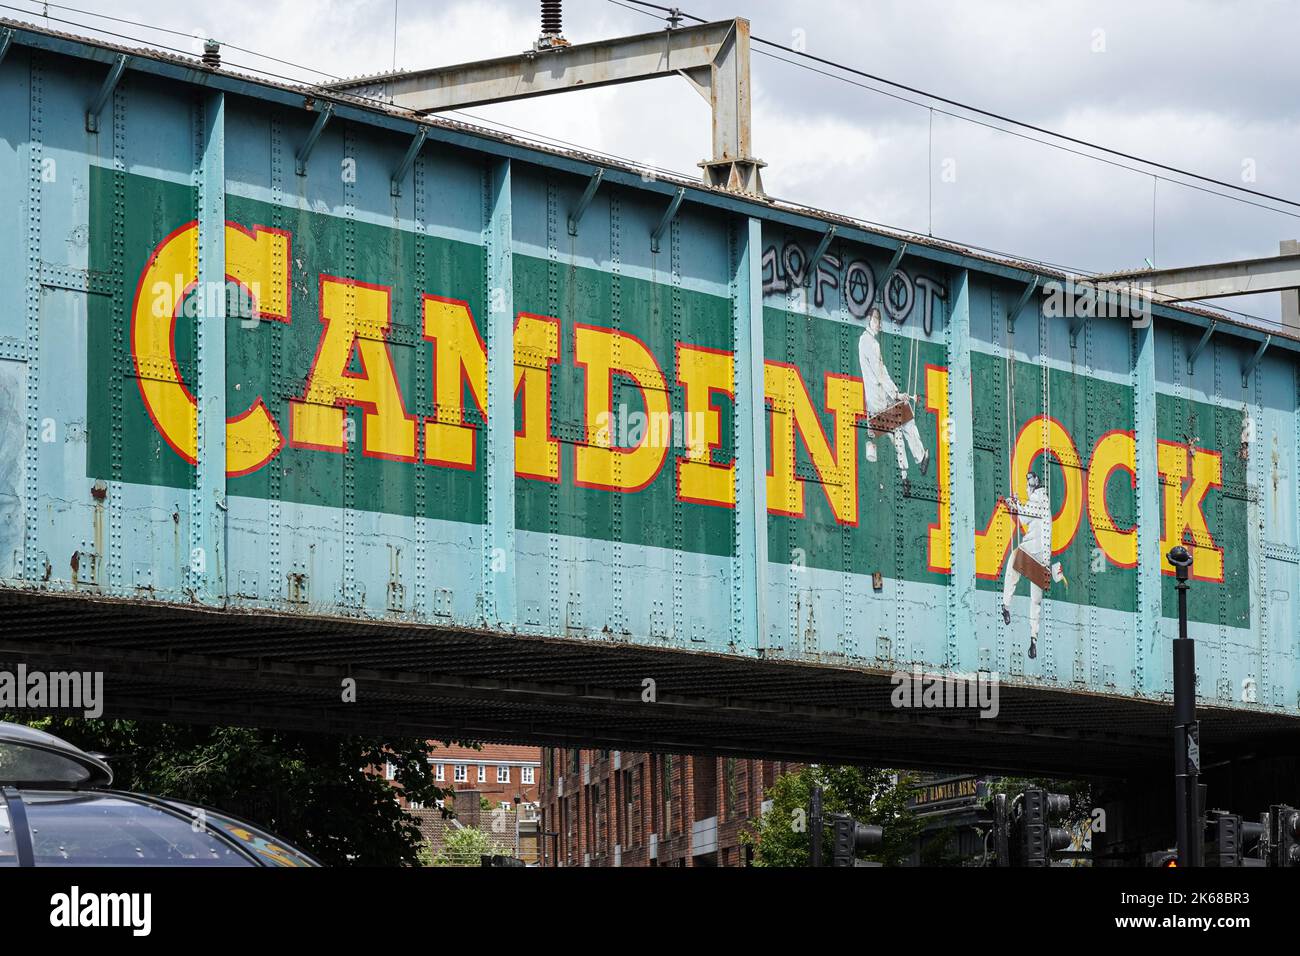 Pont de chemin de fer Camden Lock au-dessus de Camden High Street, Camden Town, Londres Angleterre Royaume-Uni Banque D'Images